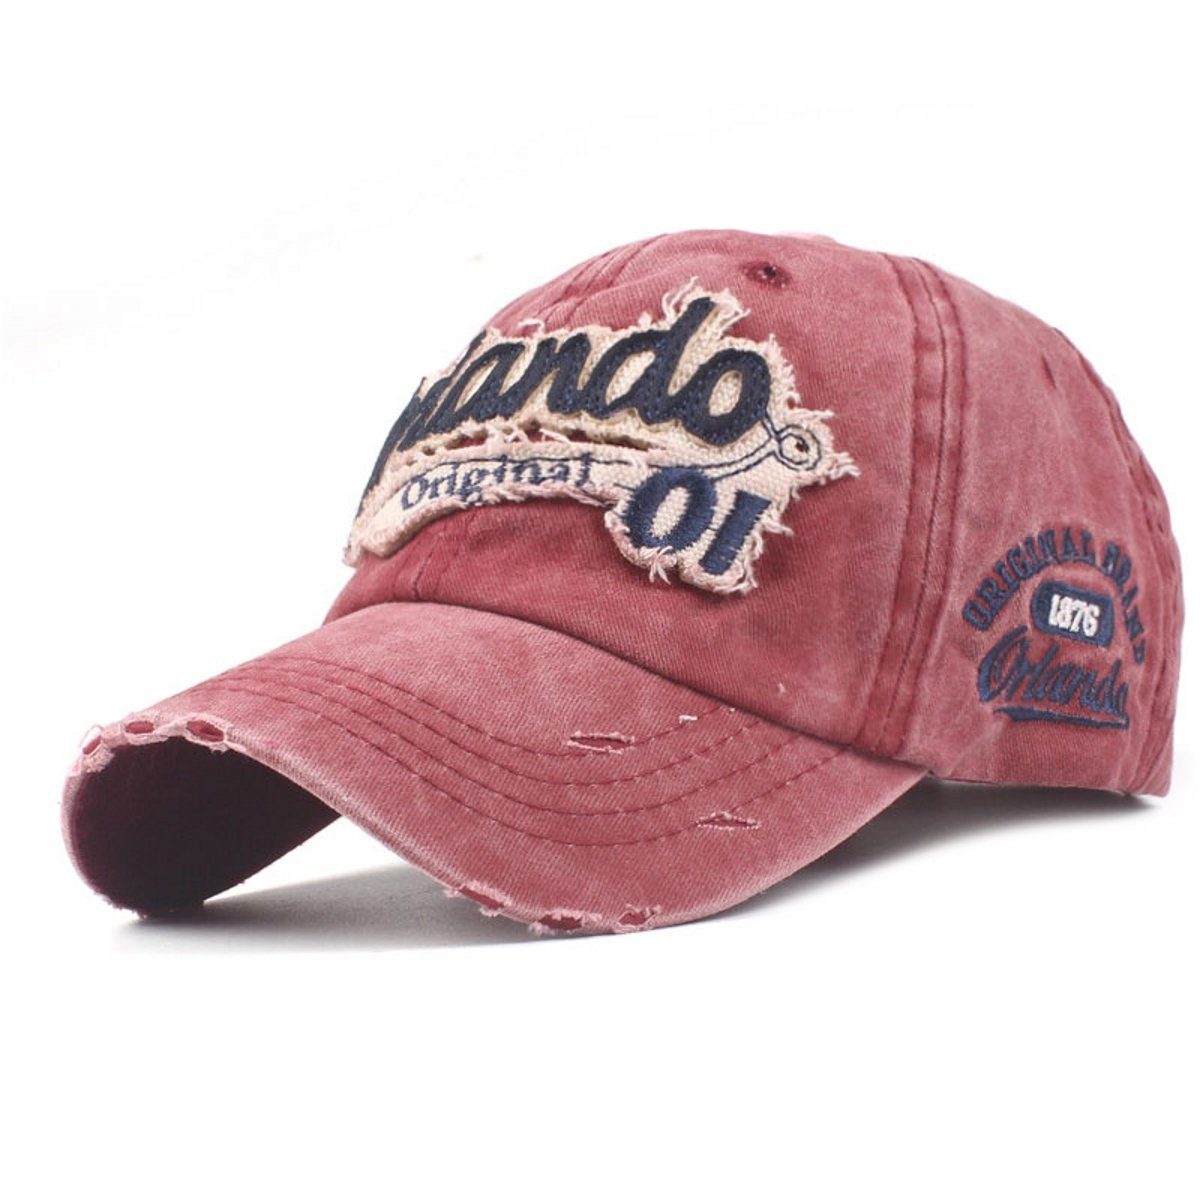 Style Cap Retro Vintage Washed Look Sporty Baseball Baseballcap Original rot Orlando Used